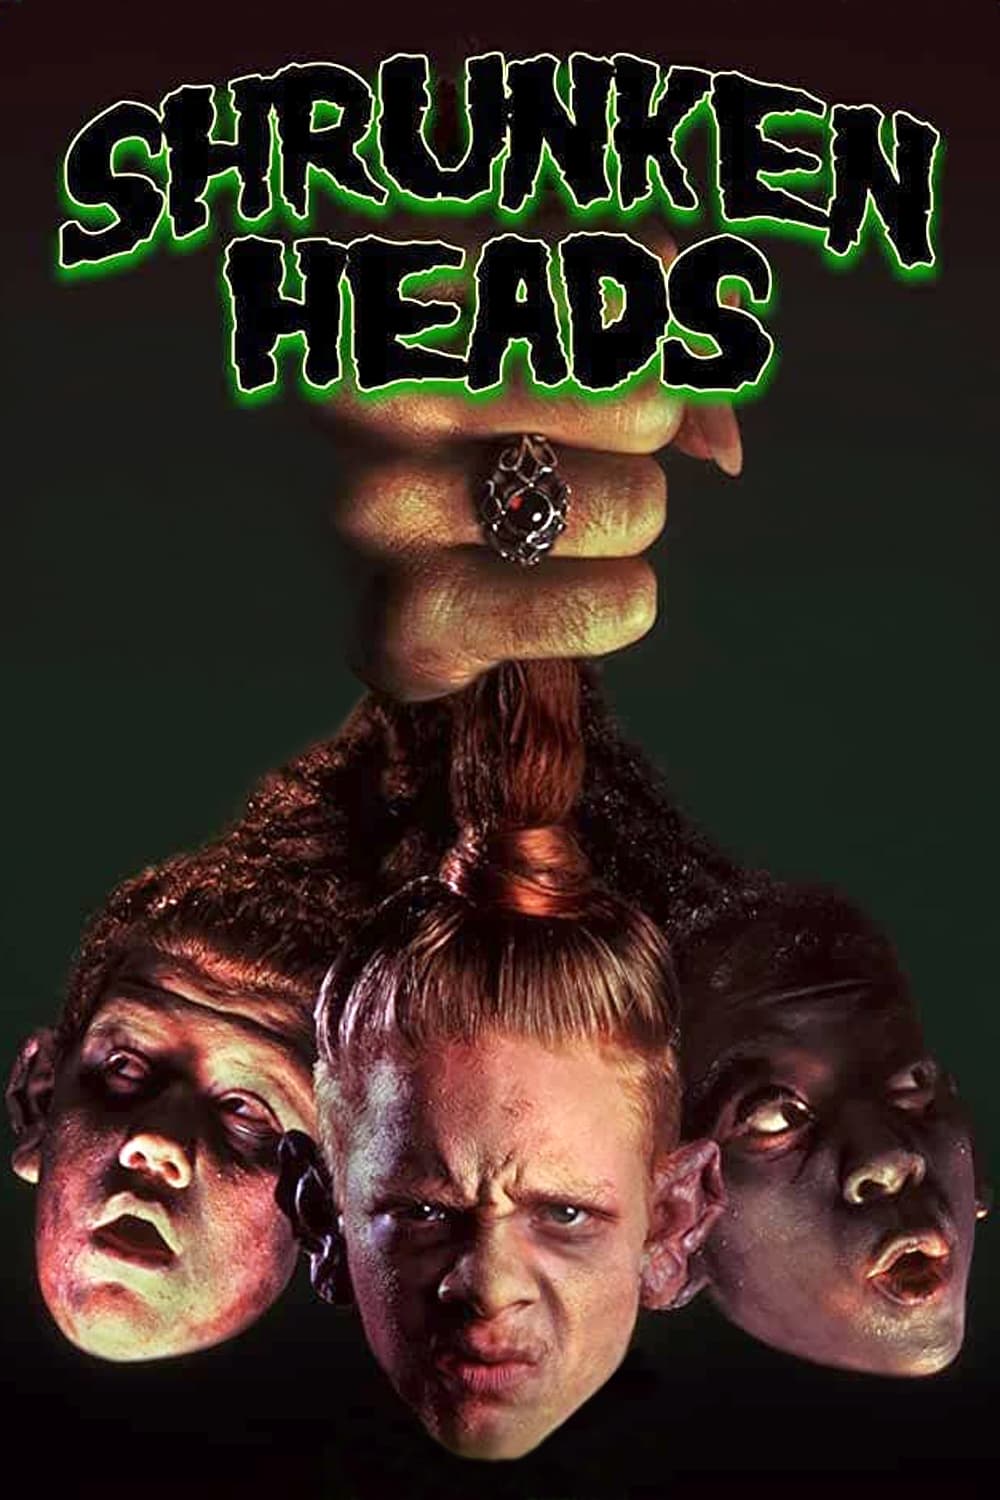 Shrunken Heads (1994)